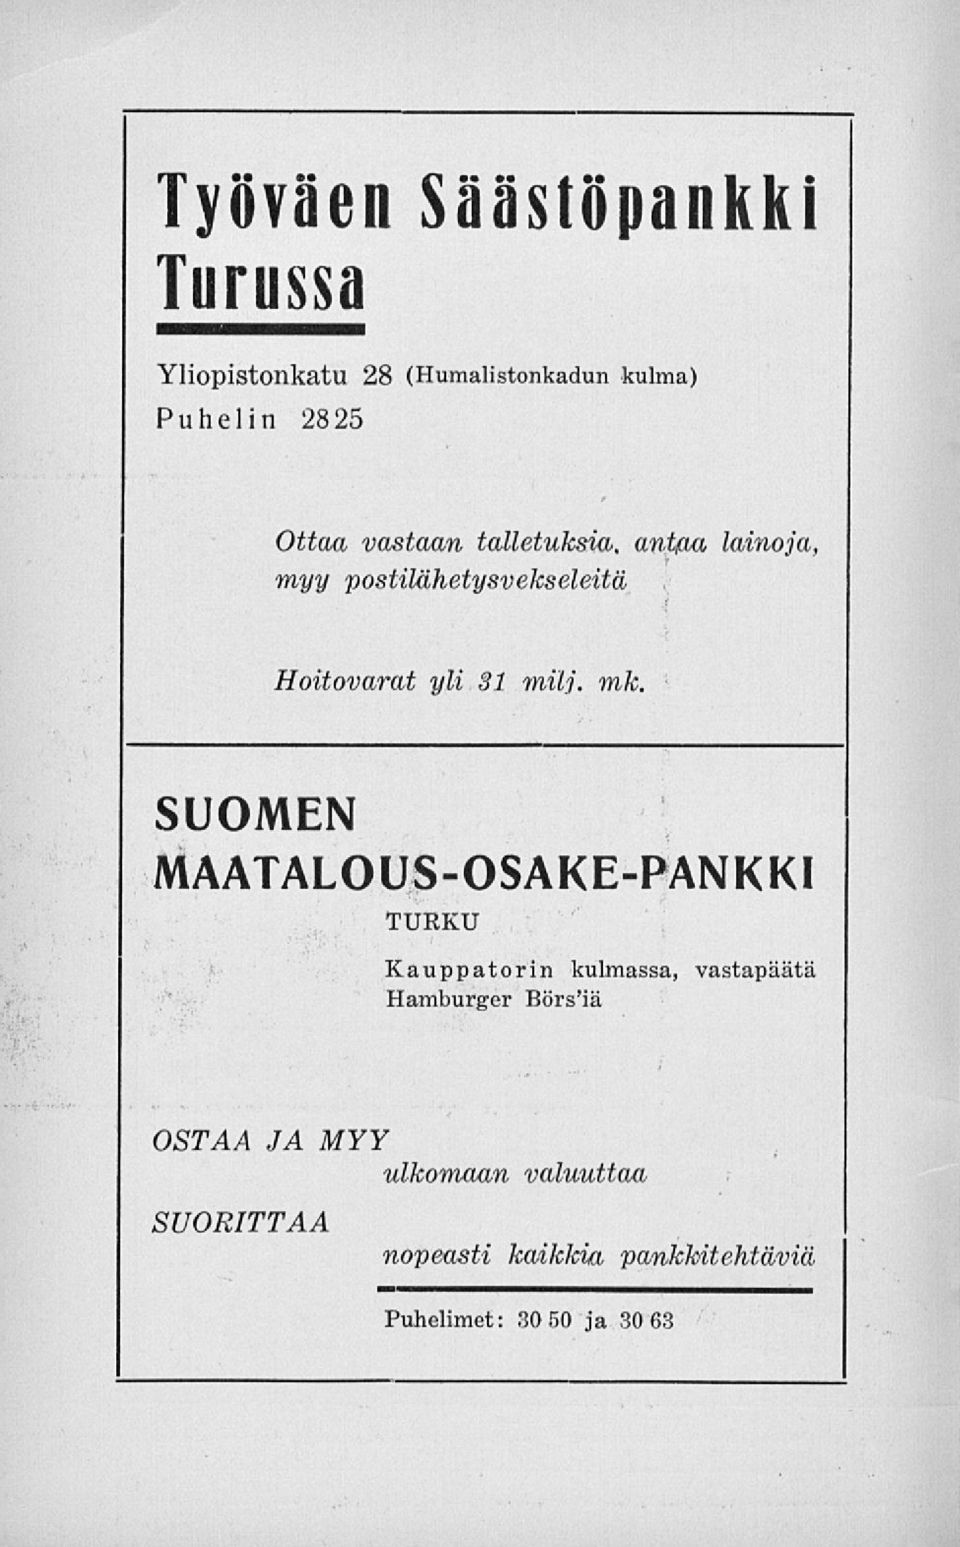 mk, SUOMEN MAATALOUS-OSAKE-PANKKI TUKKU Kauppatorin kulmassa, Hamburger Börs'iä vastapäätä